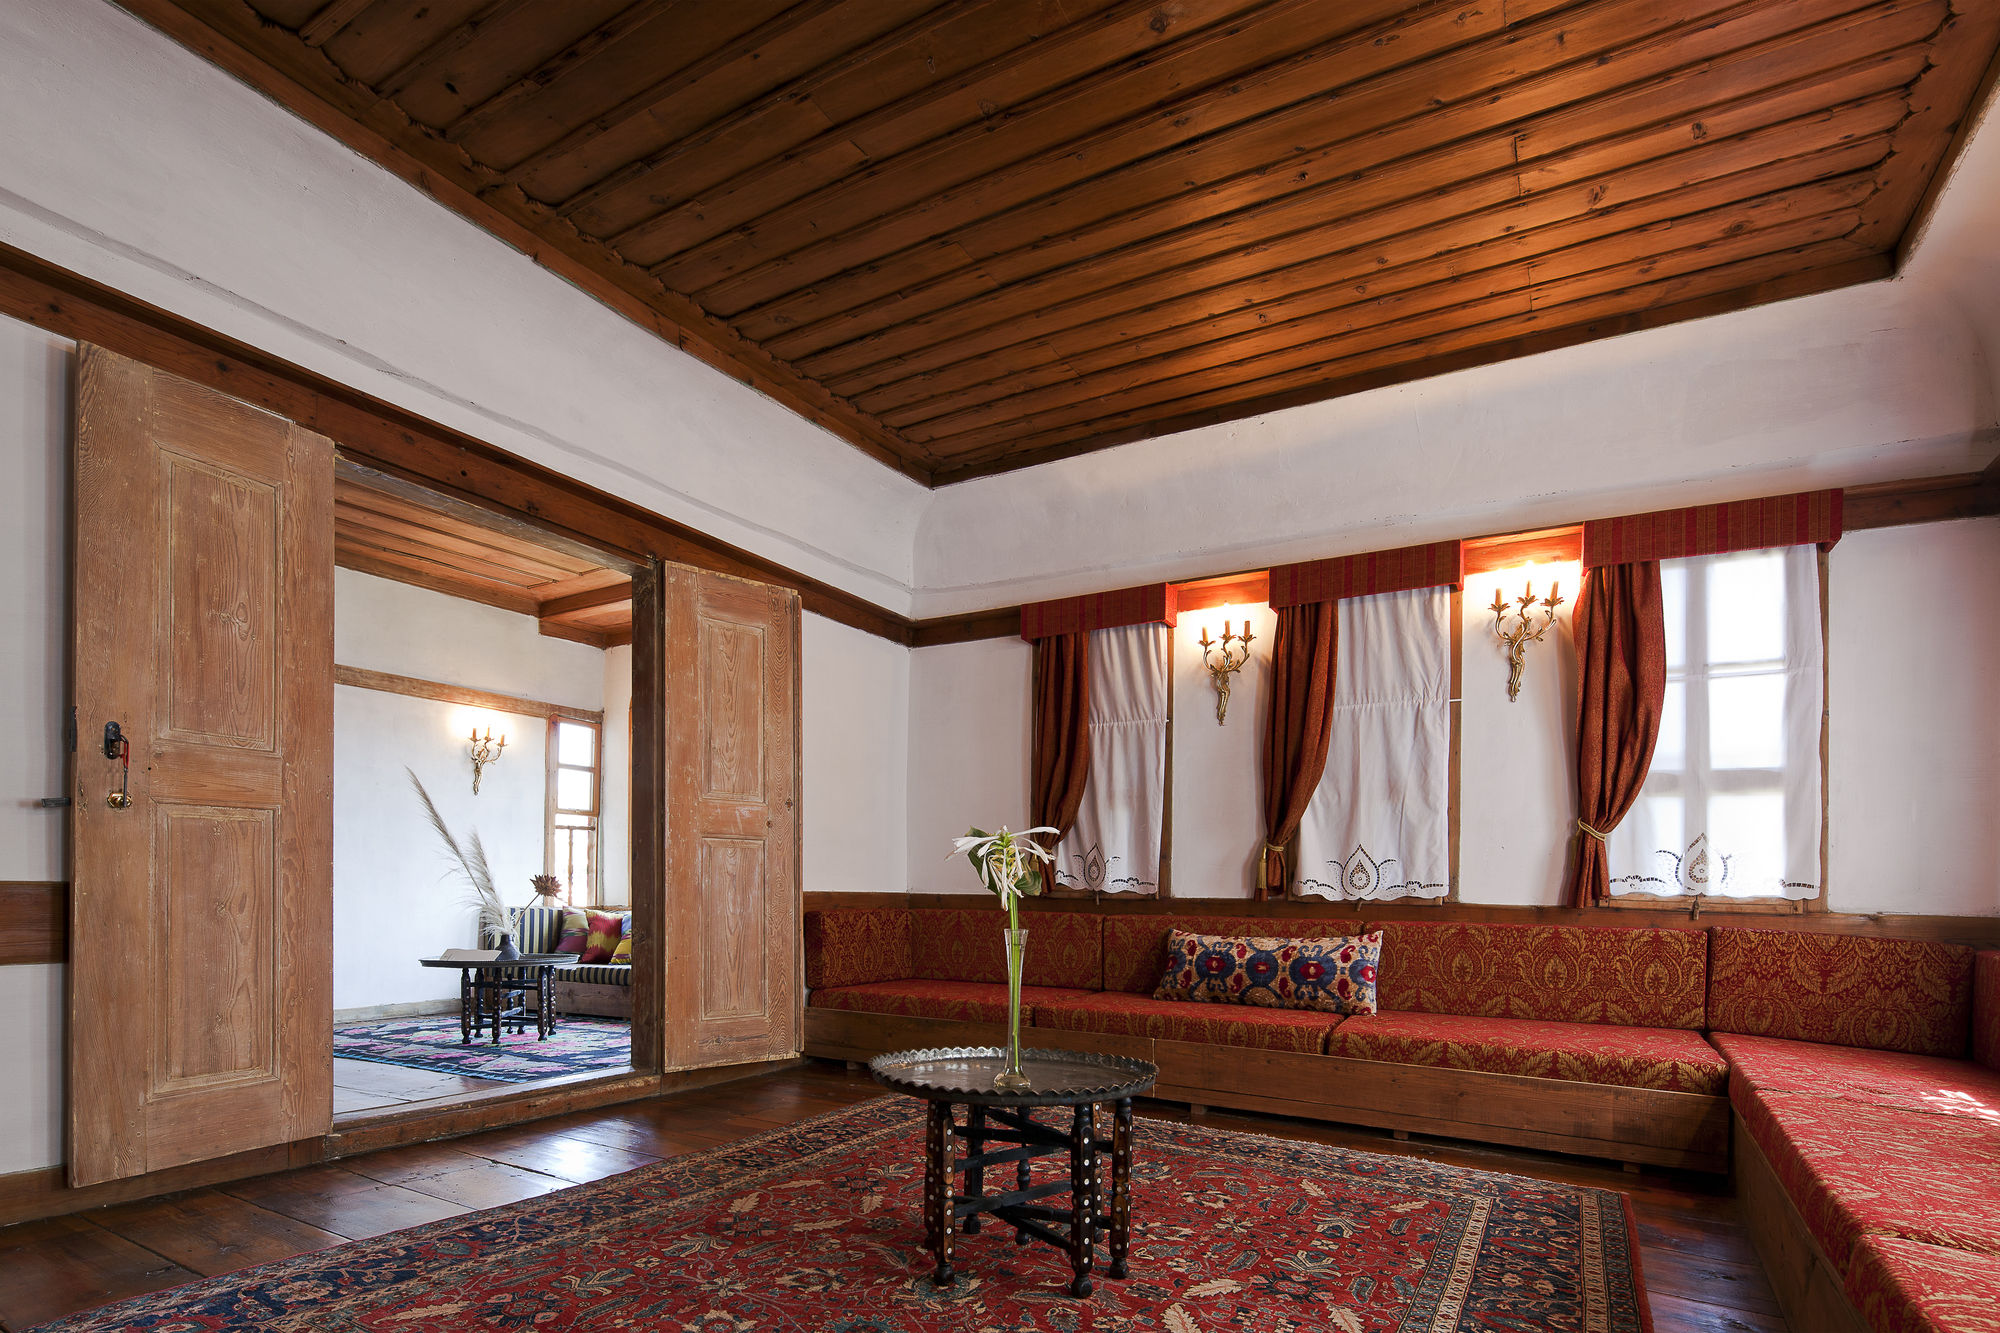 Gulevi Safranbolu Hotel